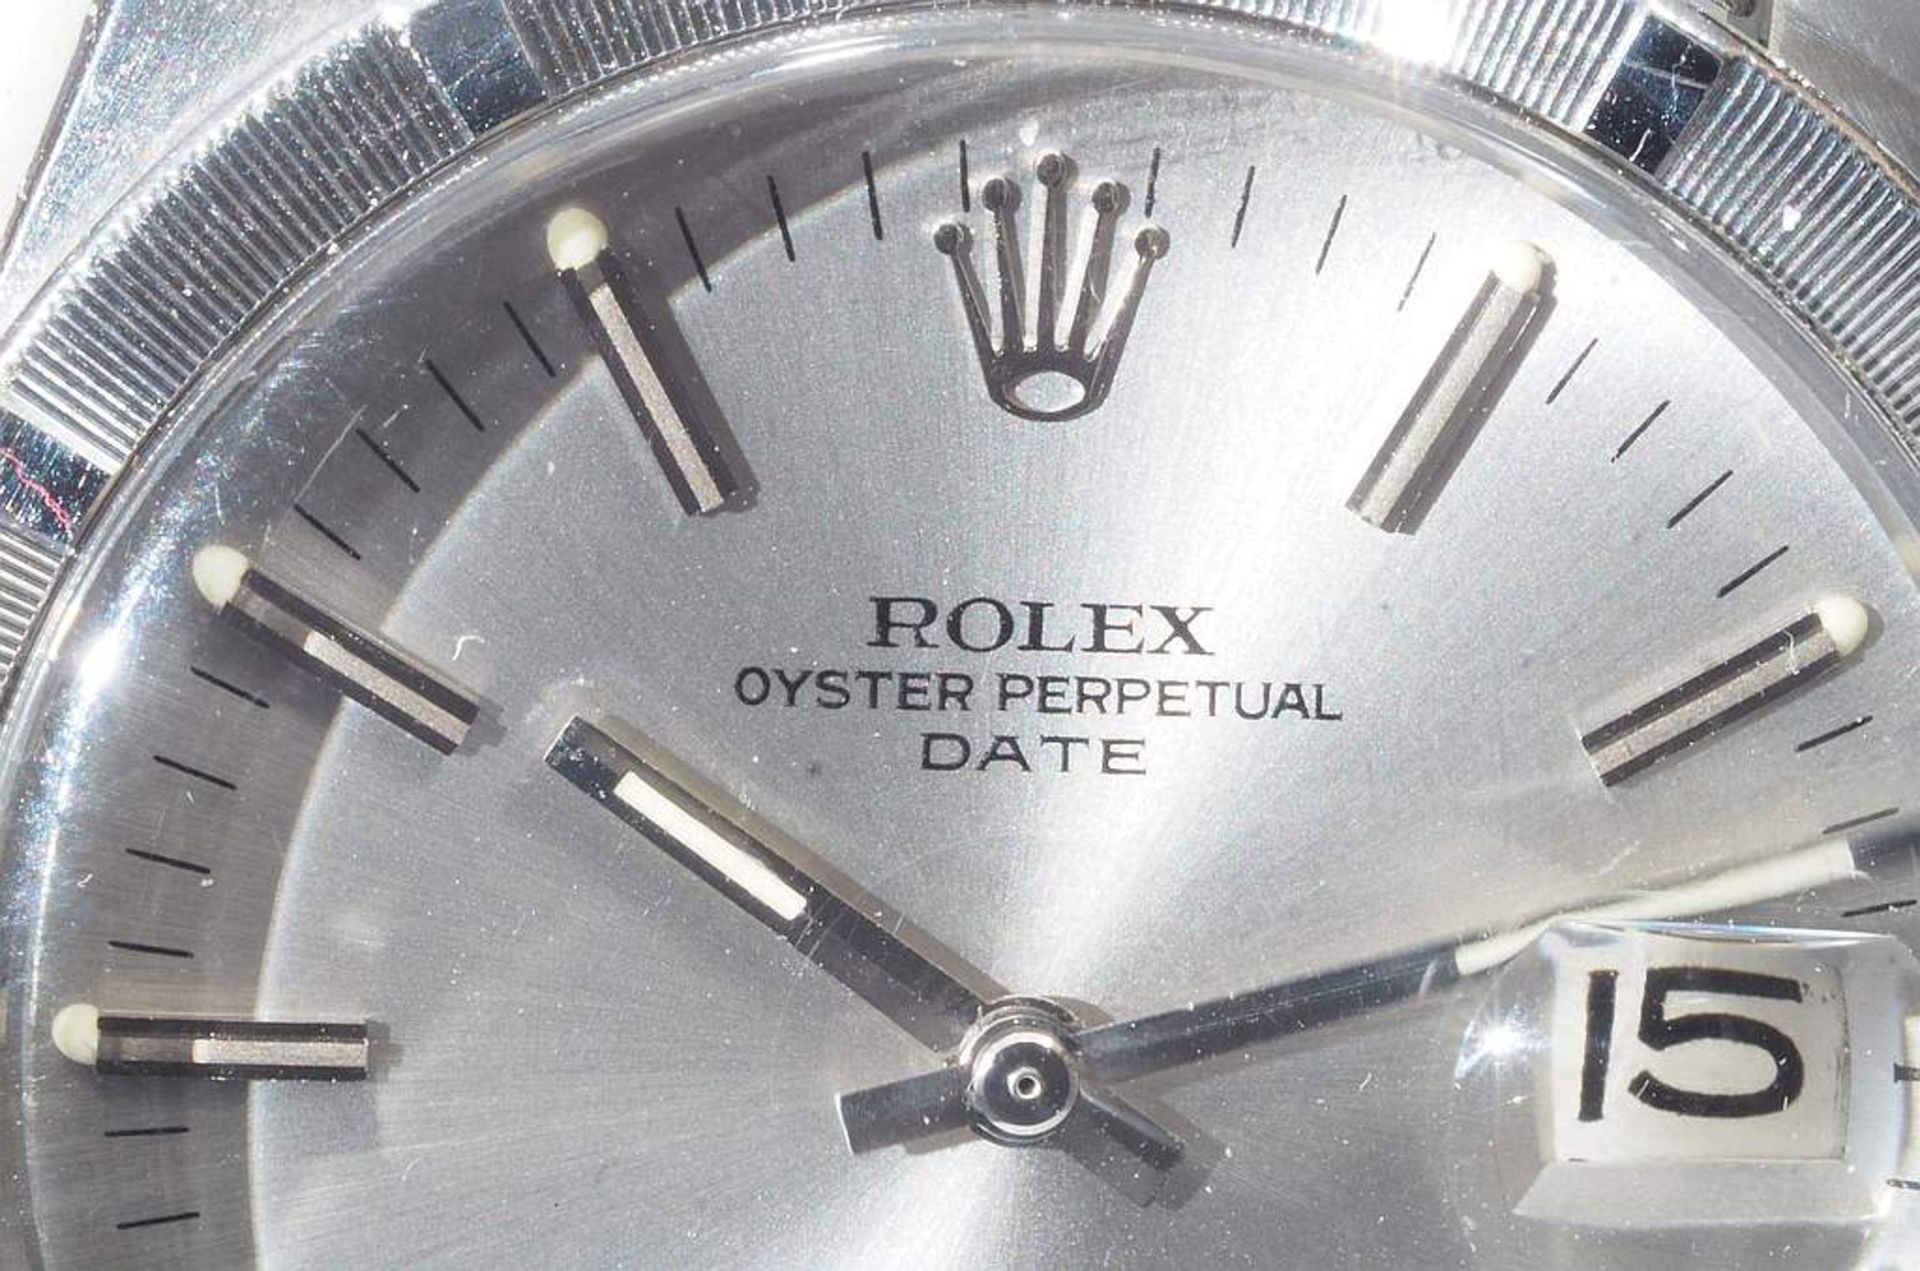 ROLEX Herrenuhr Oyster Perpetual Date. um 1970. Automatik, Kunststoffglas, silberfarbenes Zifferbl - Bild 3 aus 6